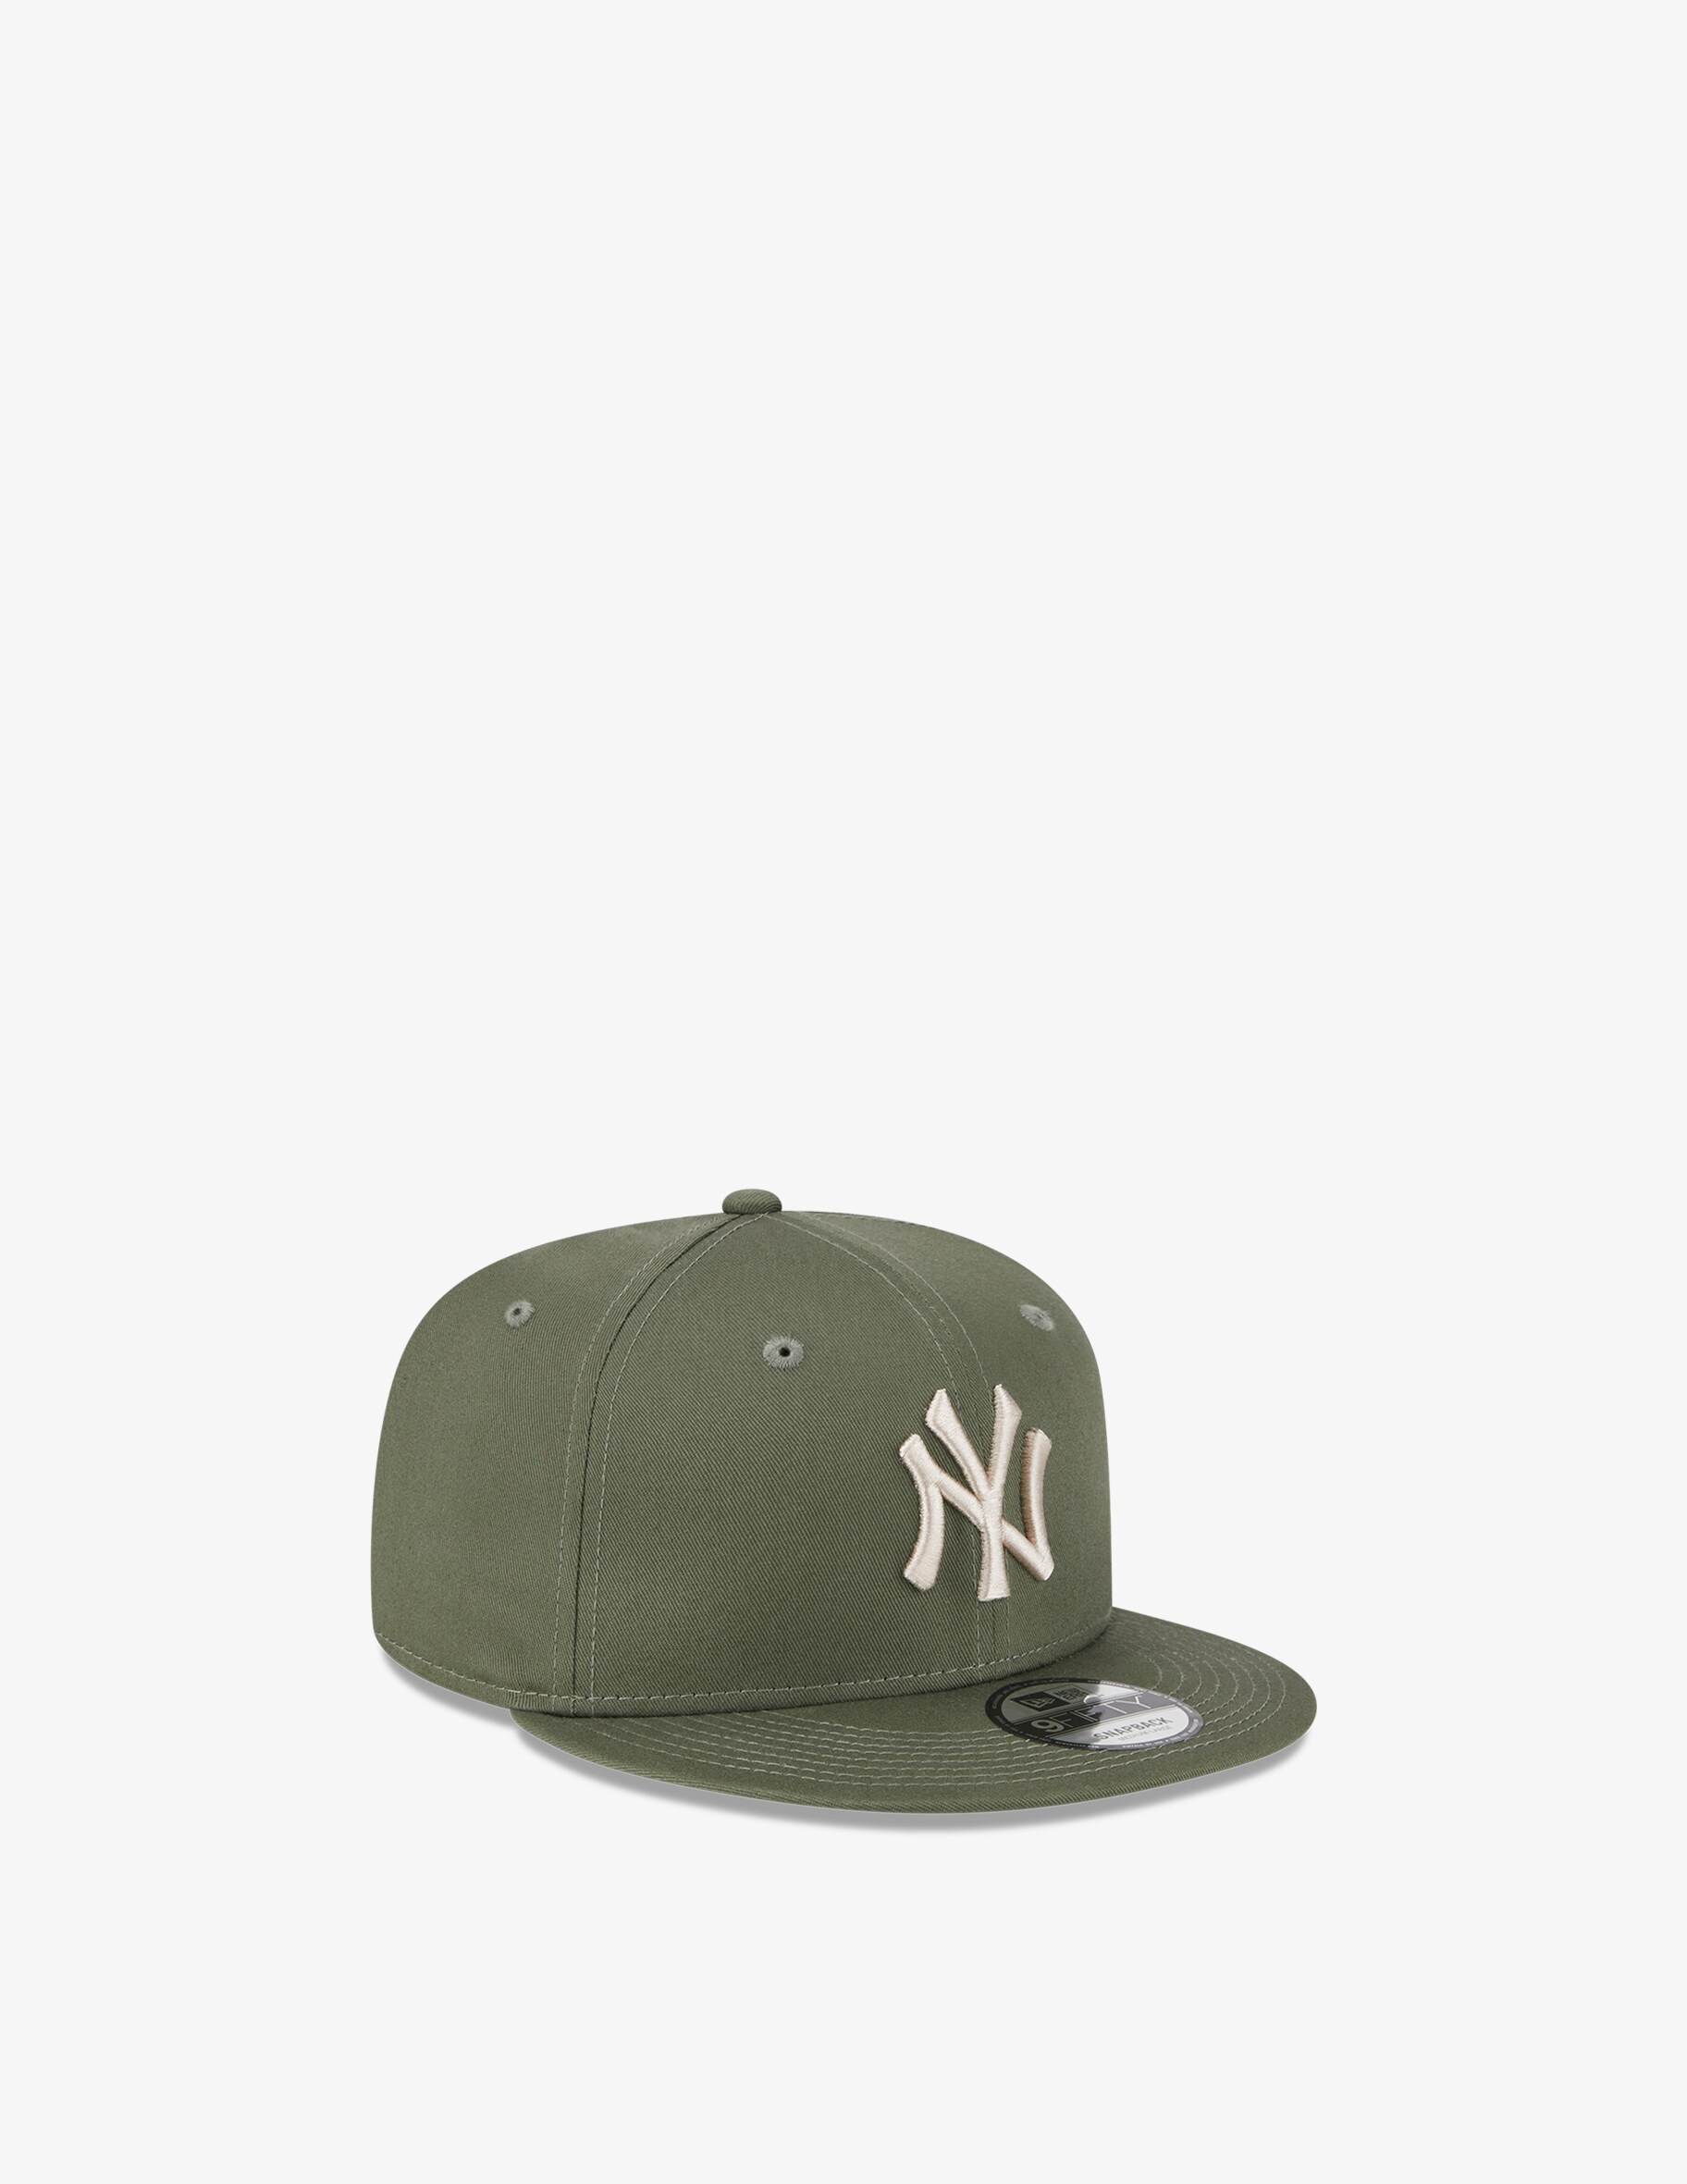 Кепка League Essential 9fifty Нью-Йорк Янкиз New Era, оливковый